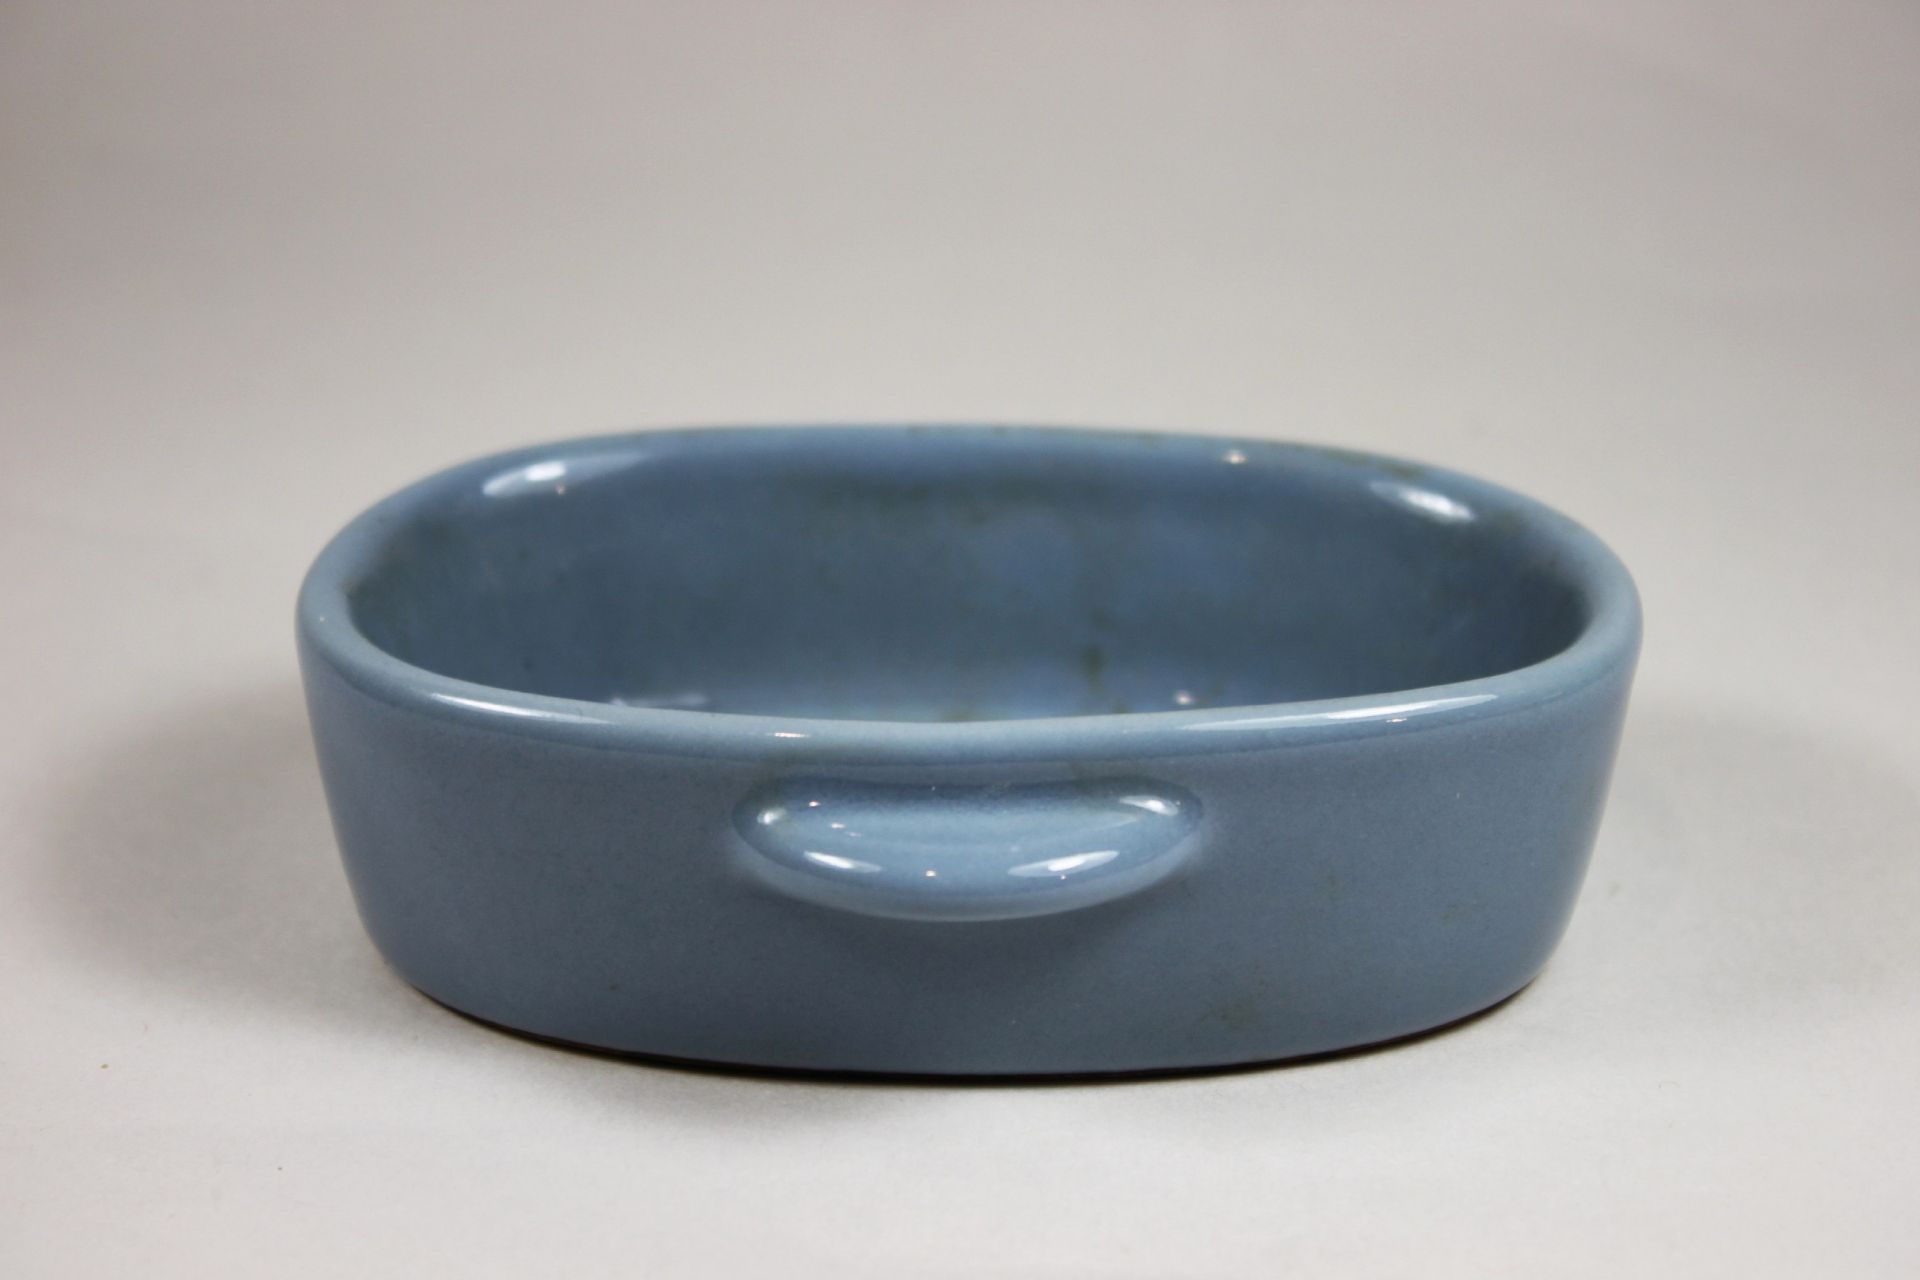 Pinselwascher, China, Porzellan, Blau glasiert, blauer Stempel unterseitig. Maße: 11 x 3,5 x 9 cm. - Bild 2 aus 3